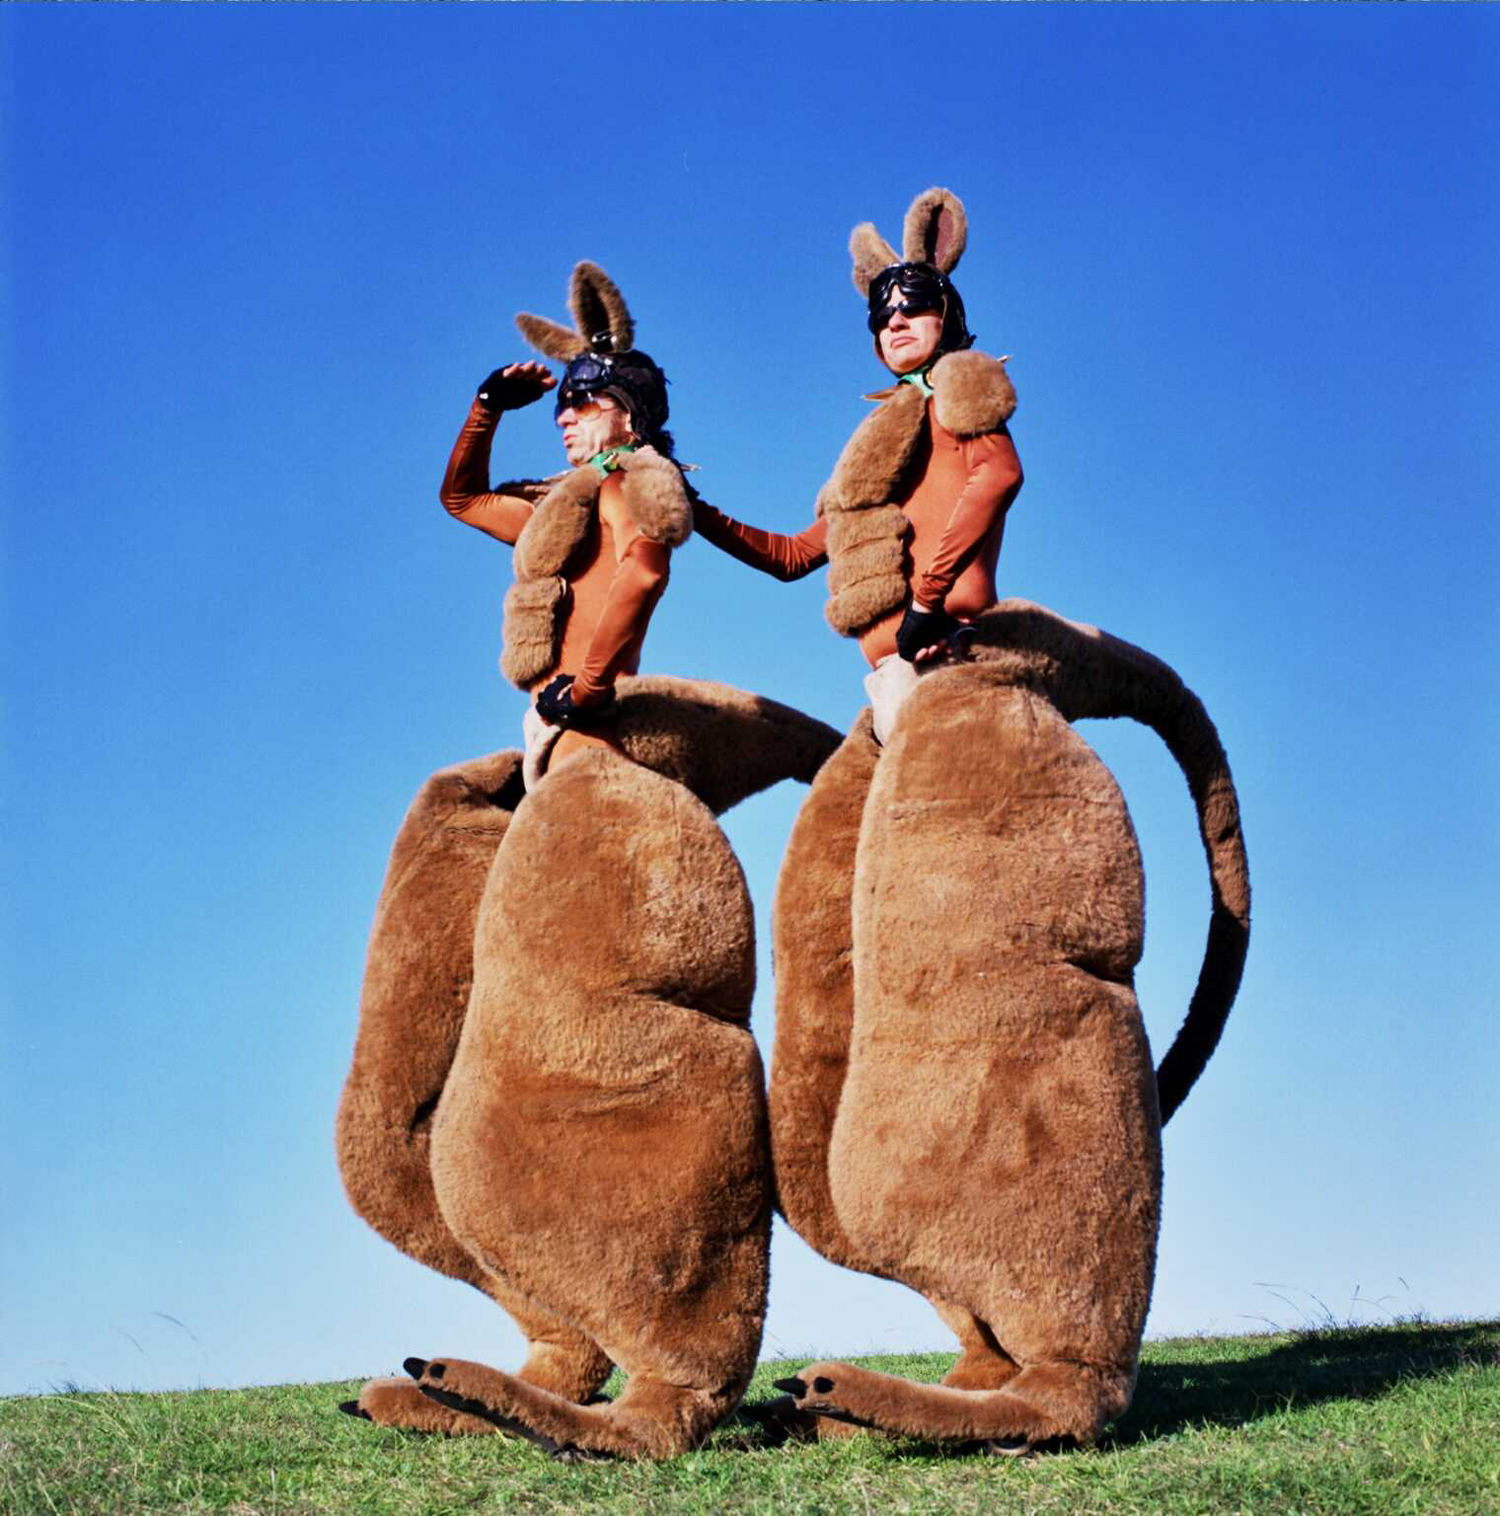 Two people dressed as giant kangaroos